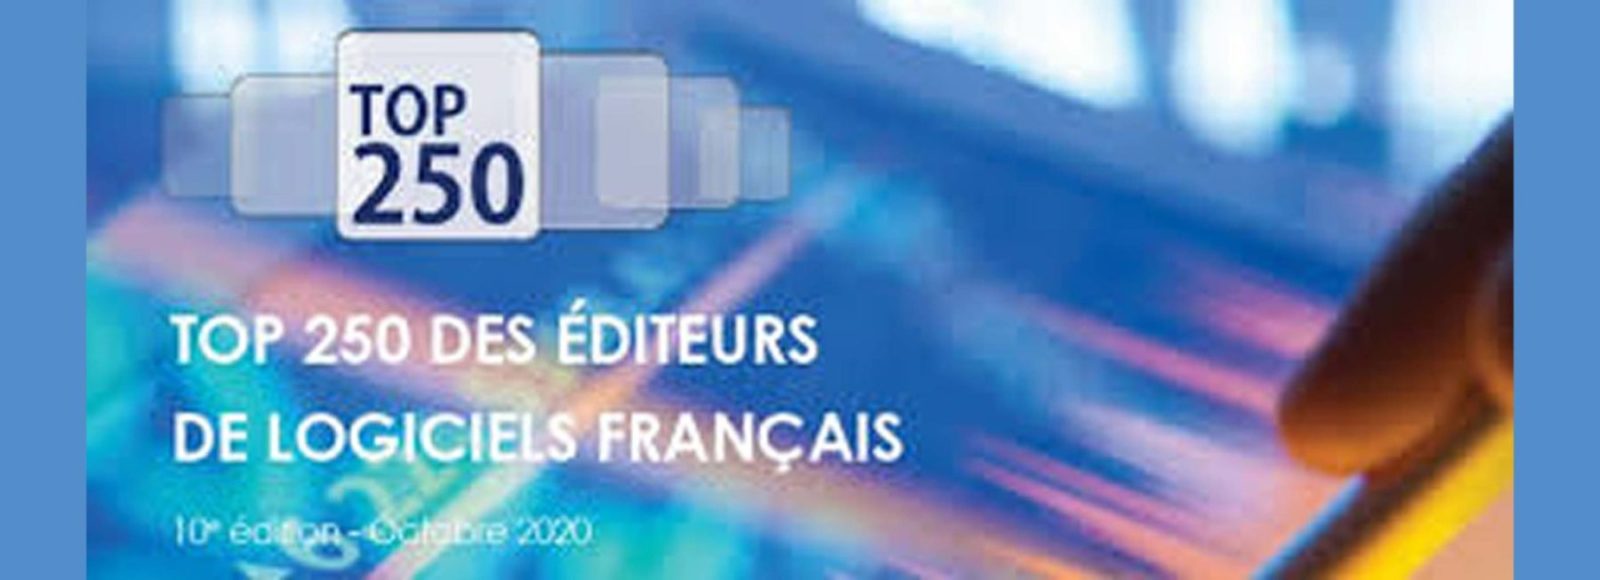 Infologic dans le TOP 250 des éditeurs de logiciels français